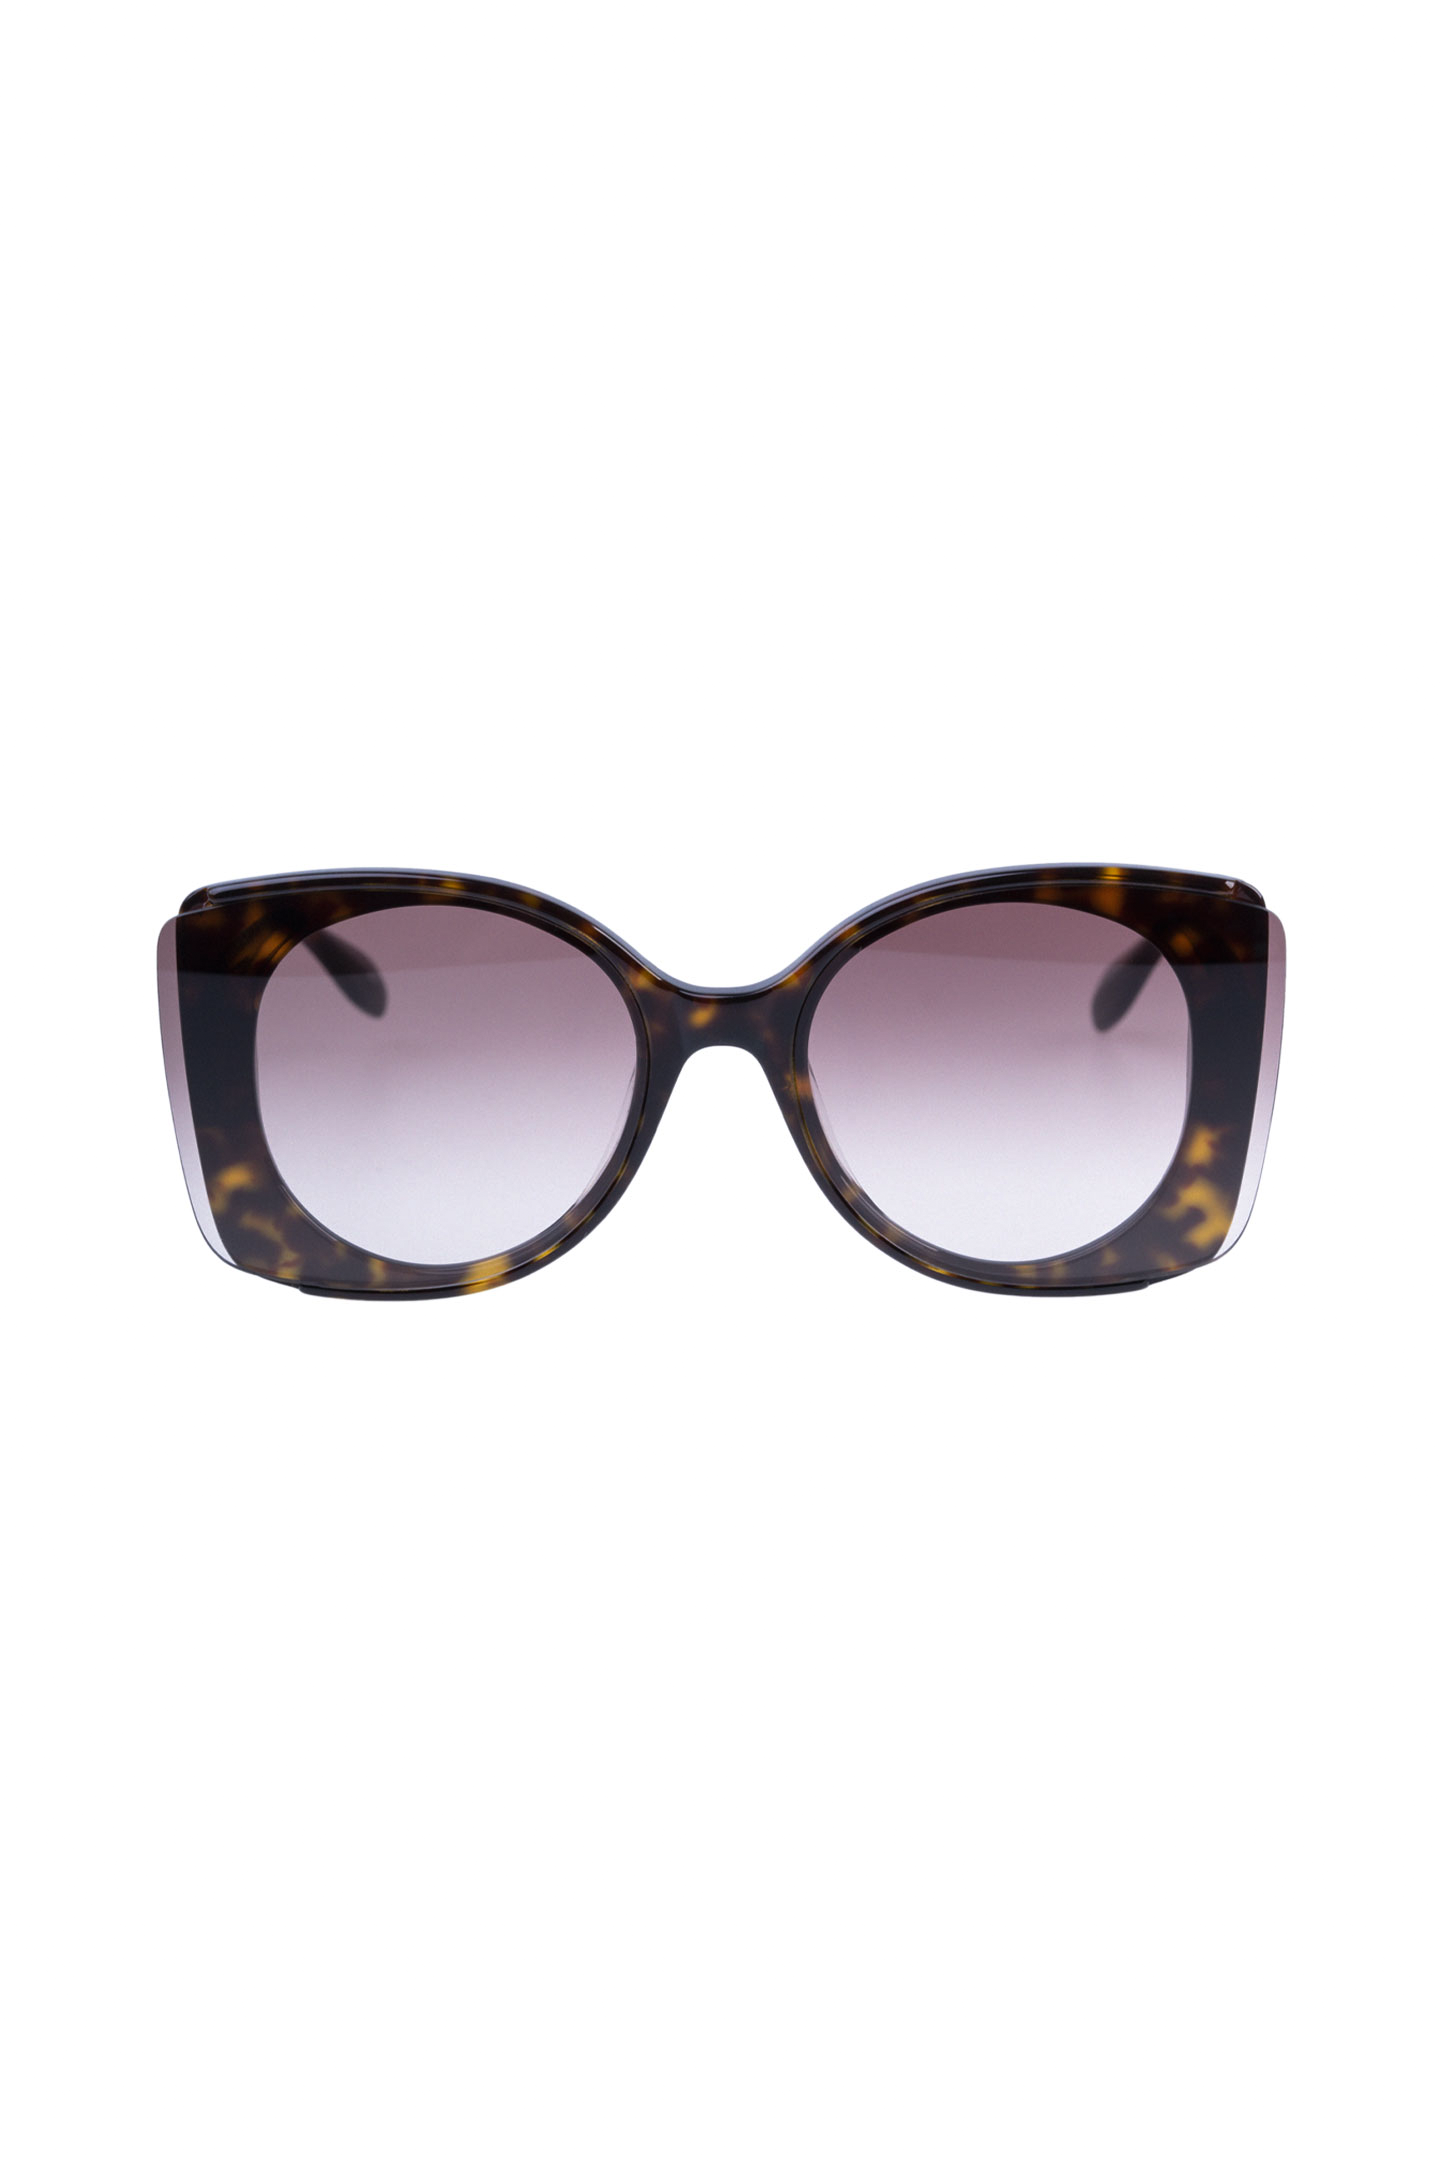 Солнцезащитные очки ALEXANDER MCQUEEN 611099 J0740, цвет: Коричневый, Женский